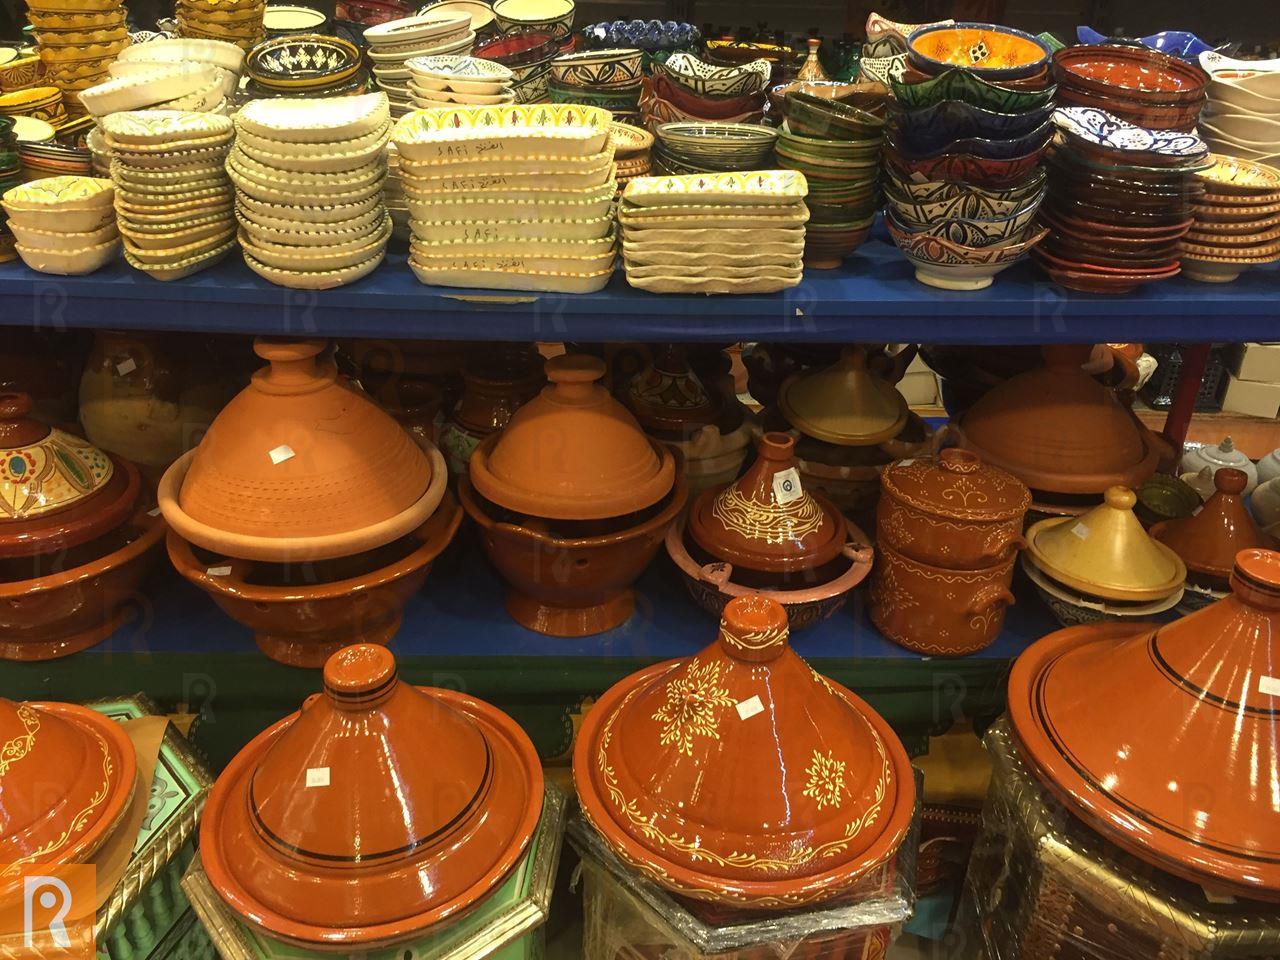 منتجات مغربية في متجر تروفاليو